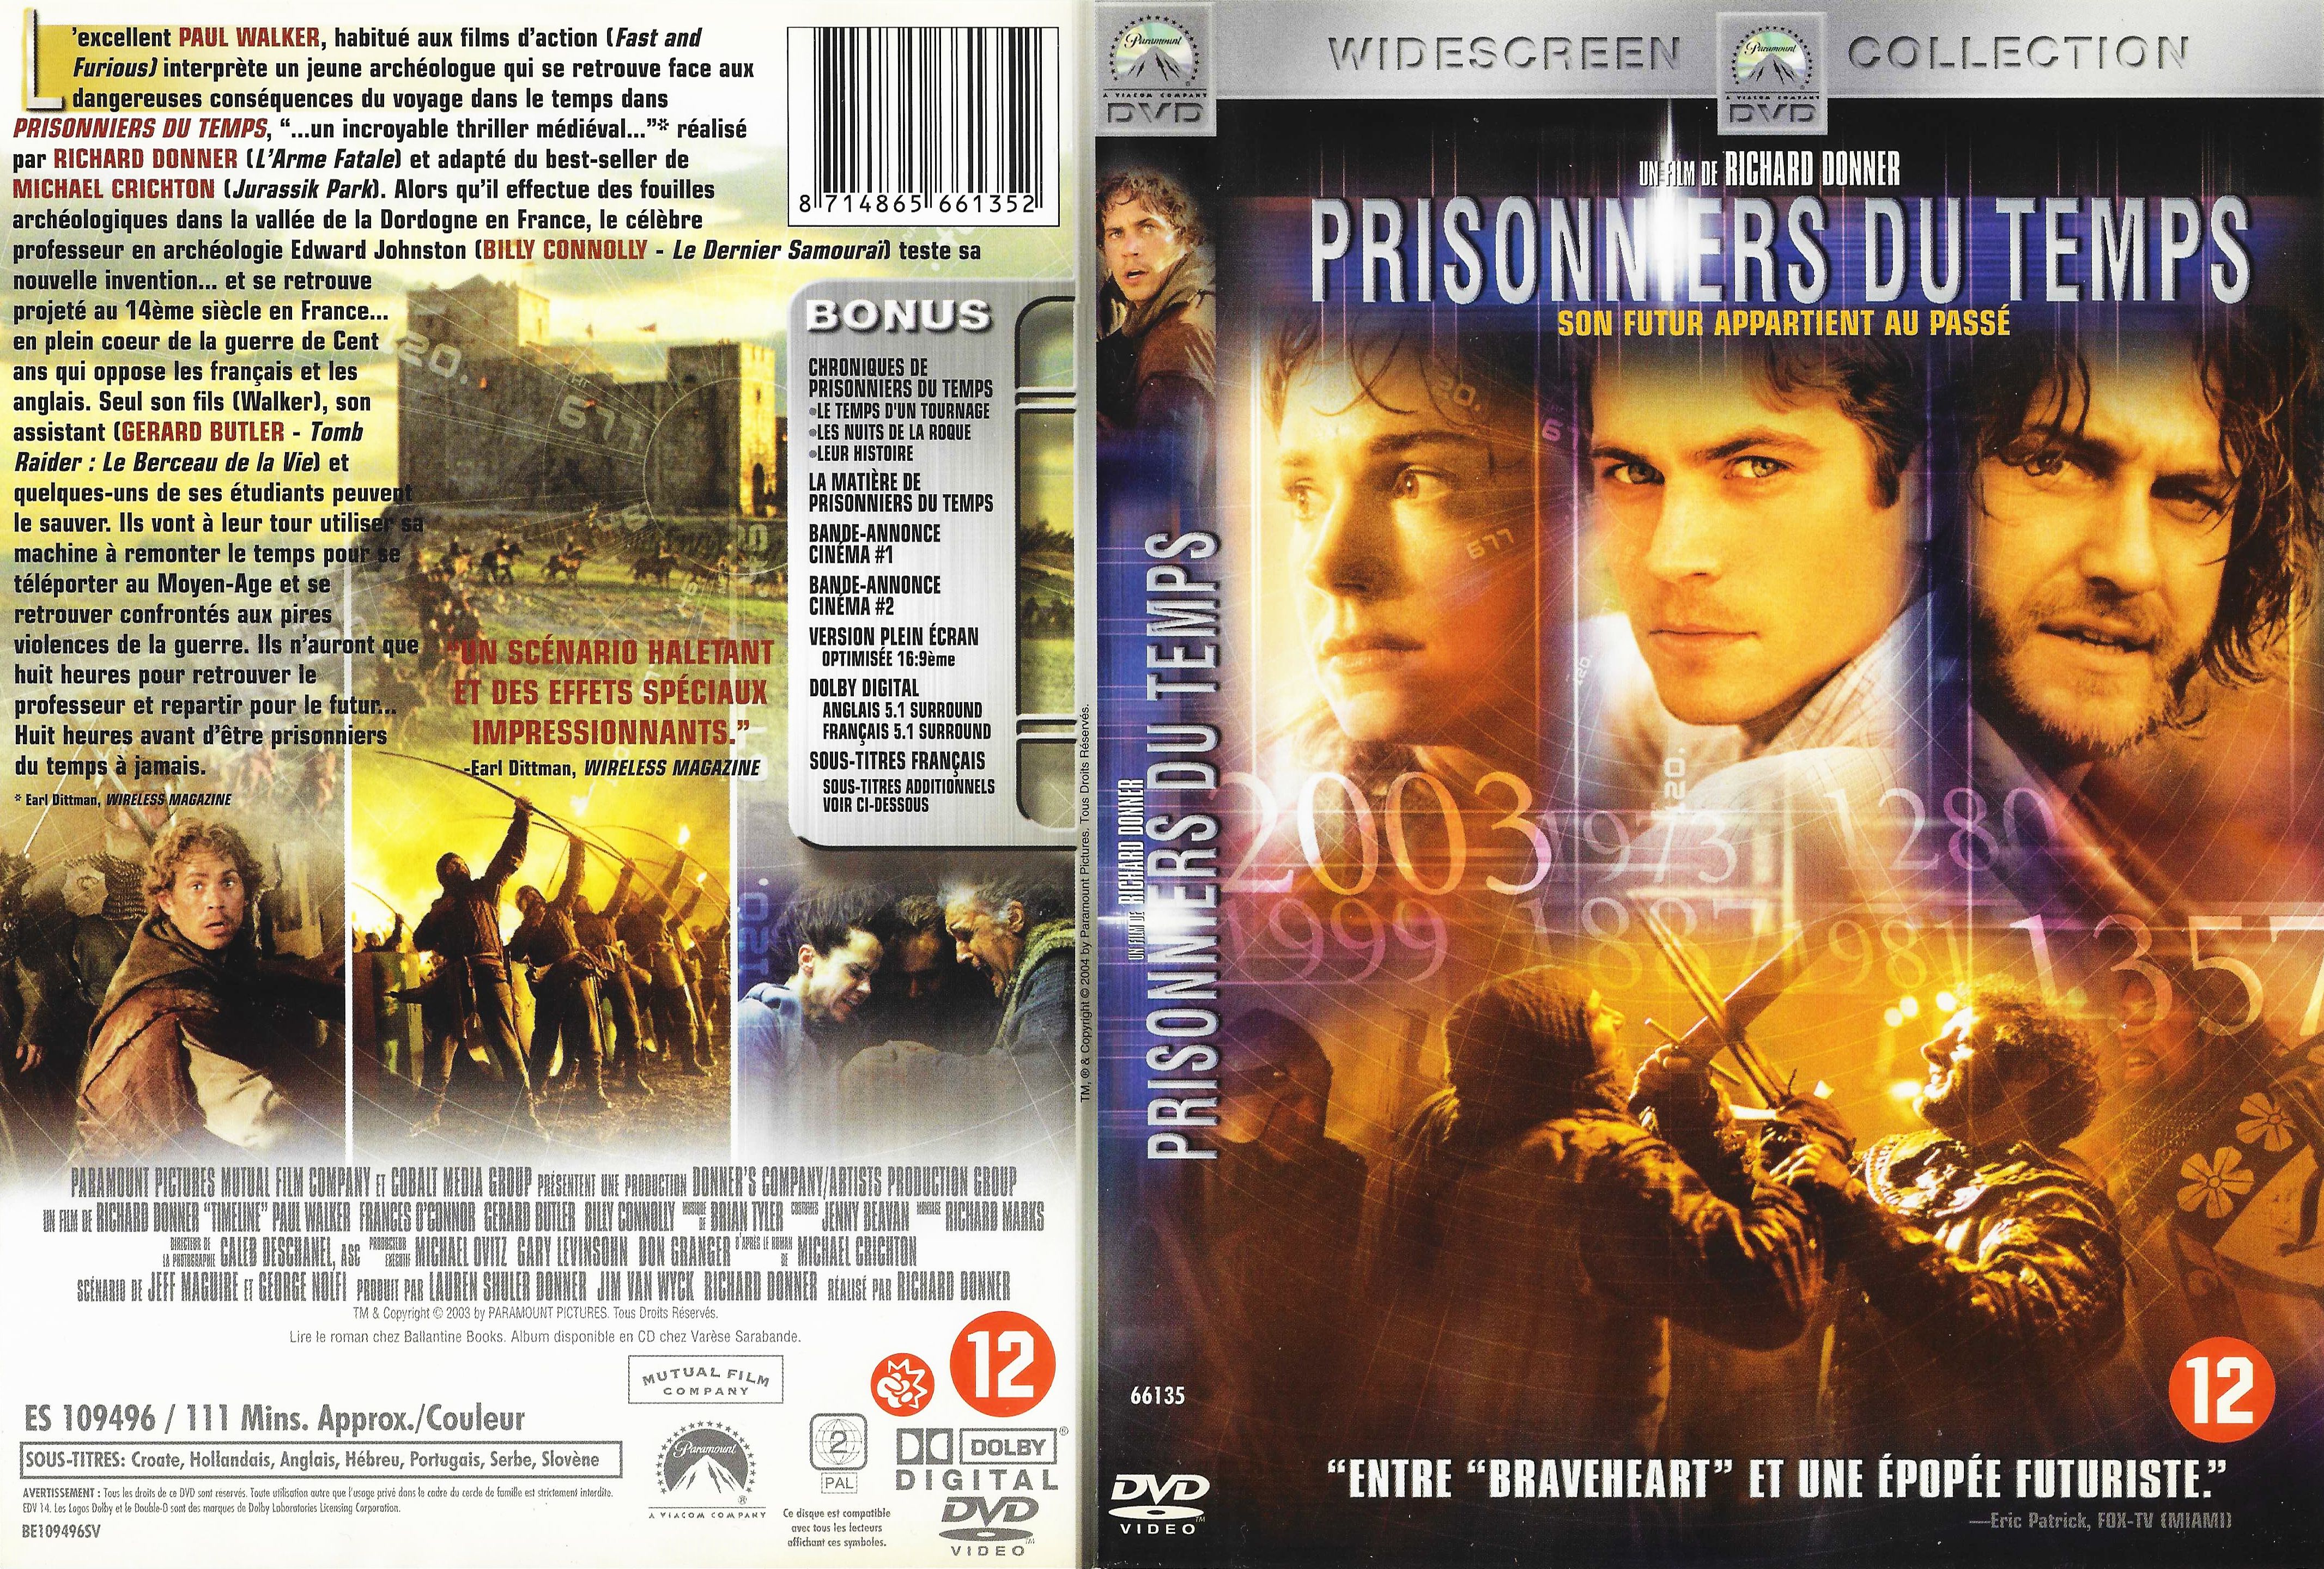 Jaquette DVD Prisonniers du temps v2